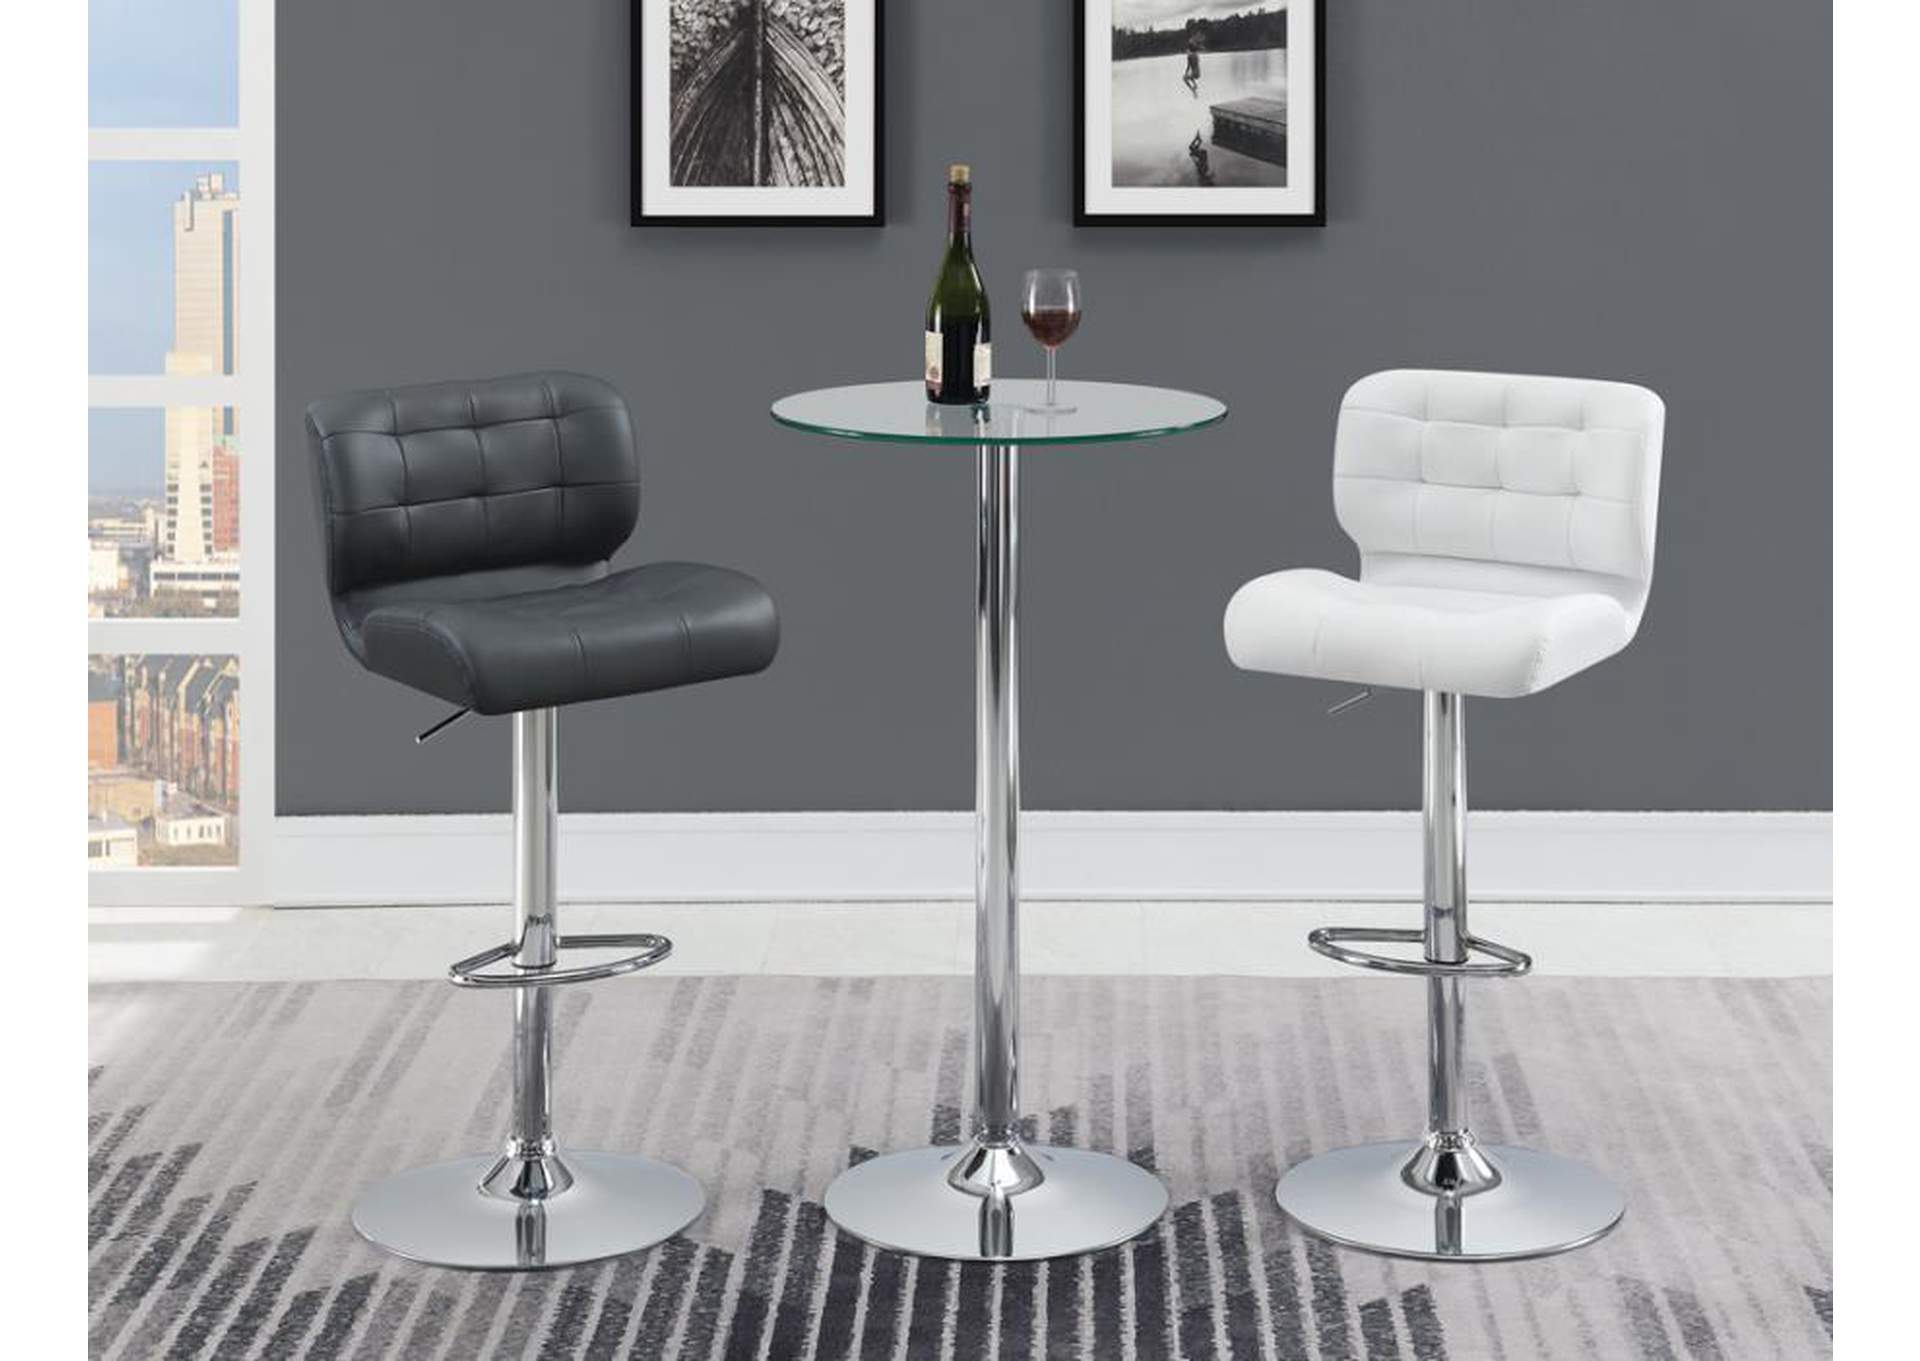 Azalea Upholstered Adjustable Bar Stools Chrome And White (Set Of 2),Coaster Furniture